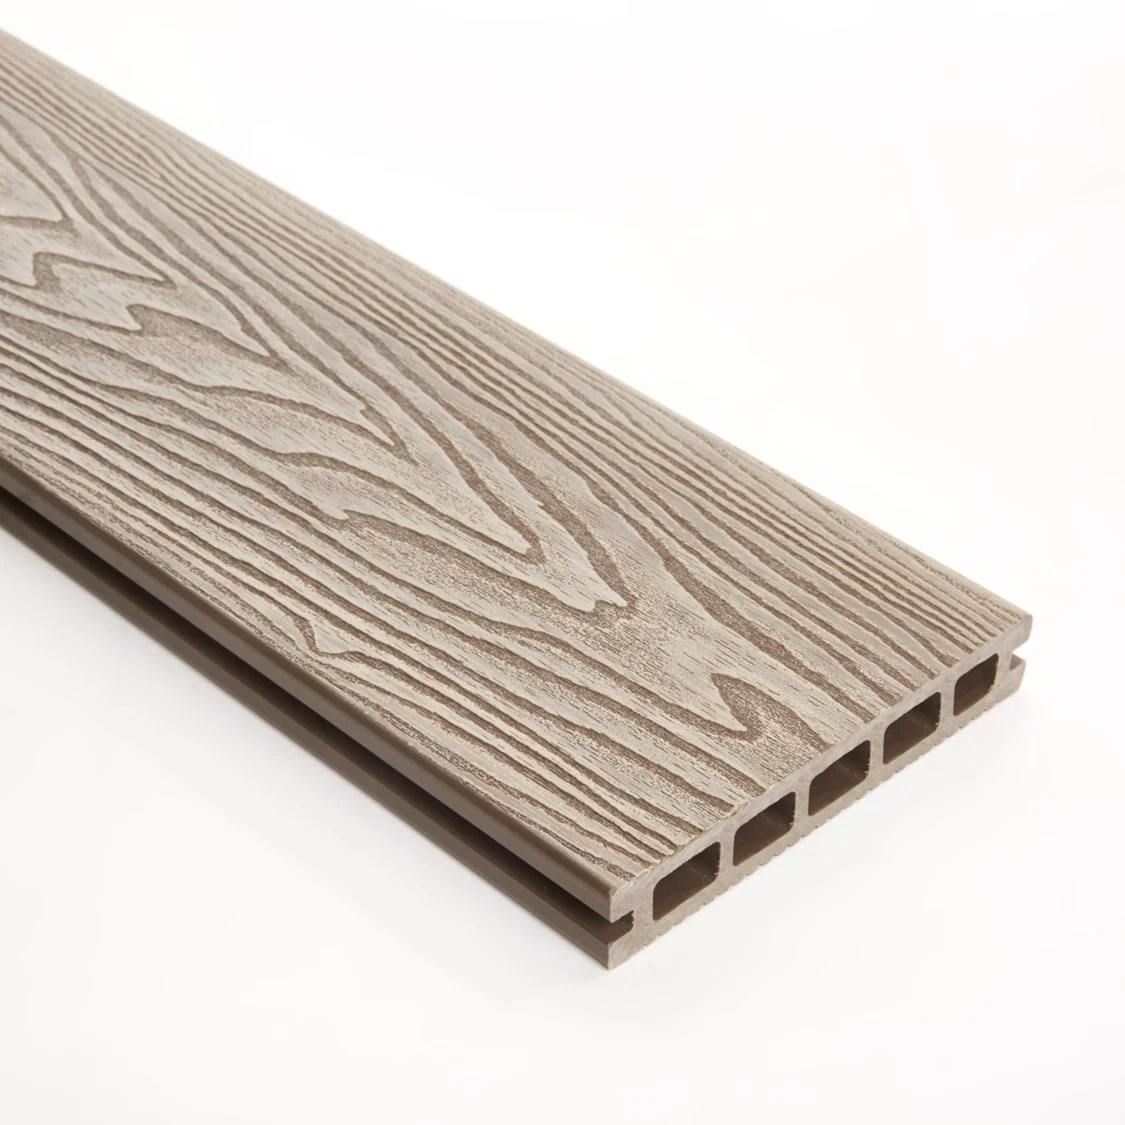 Co-Extrusion panneau composite en composite bois-plastique